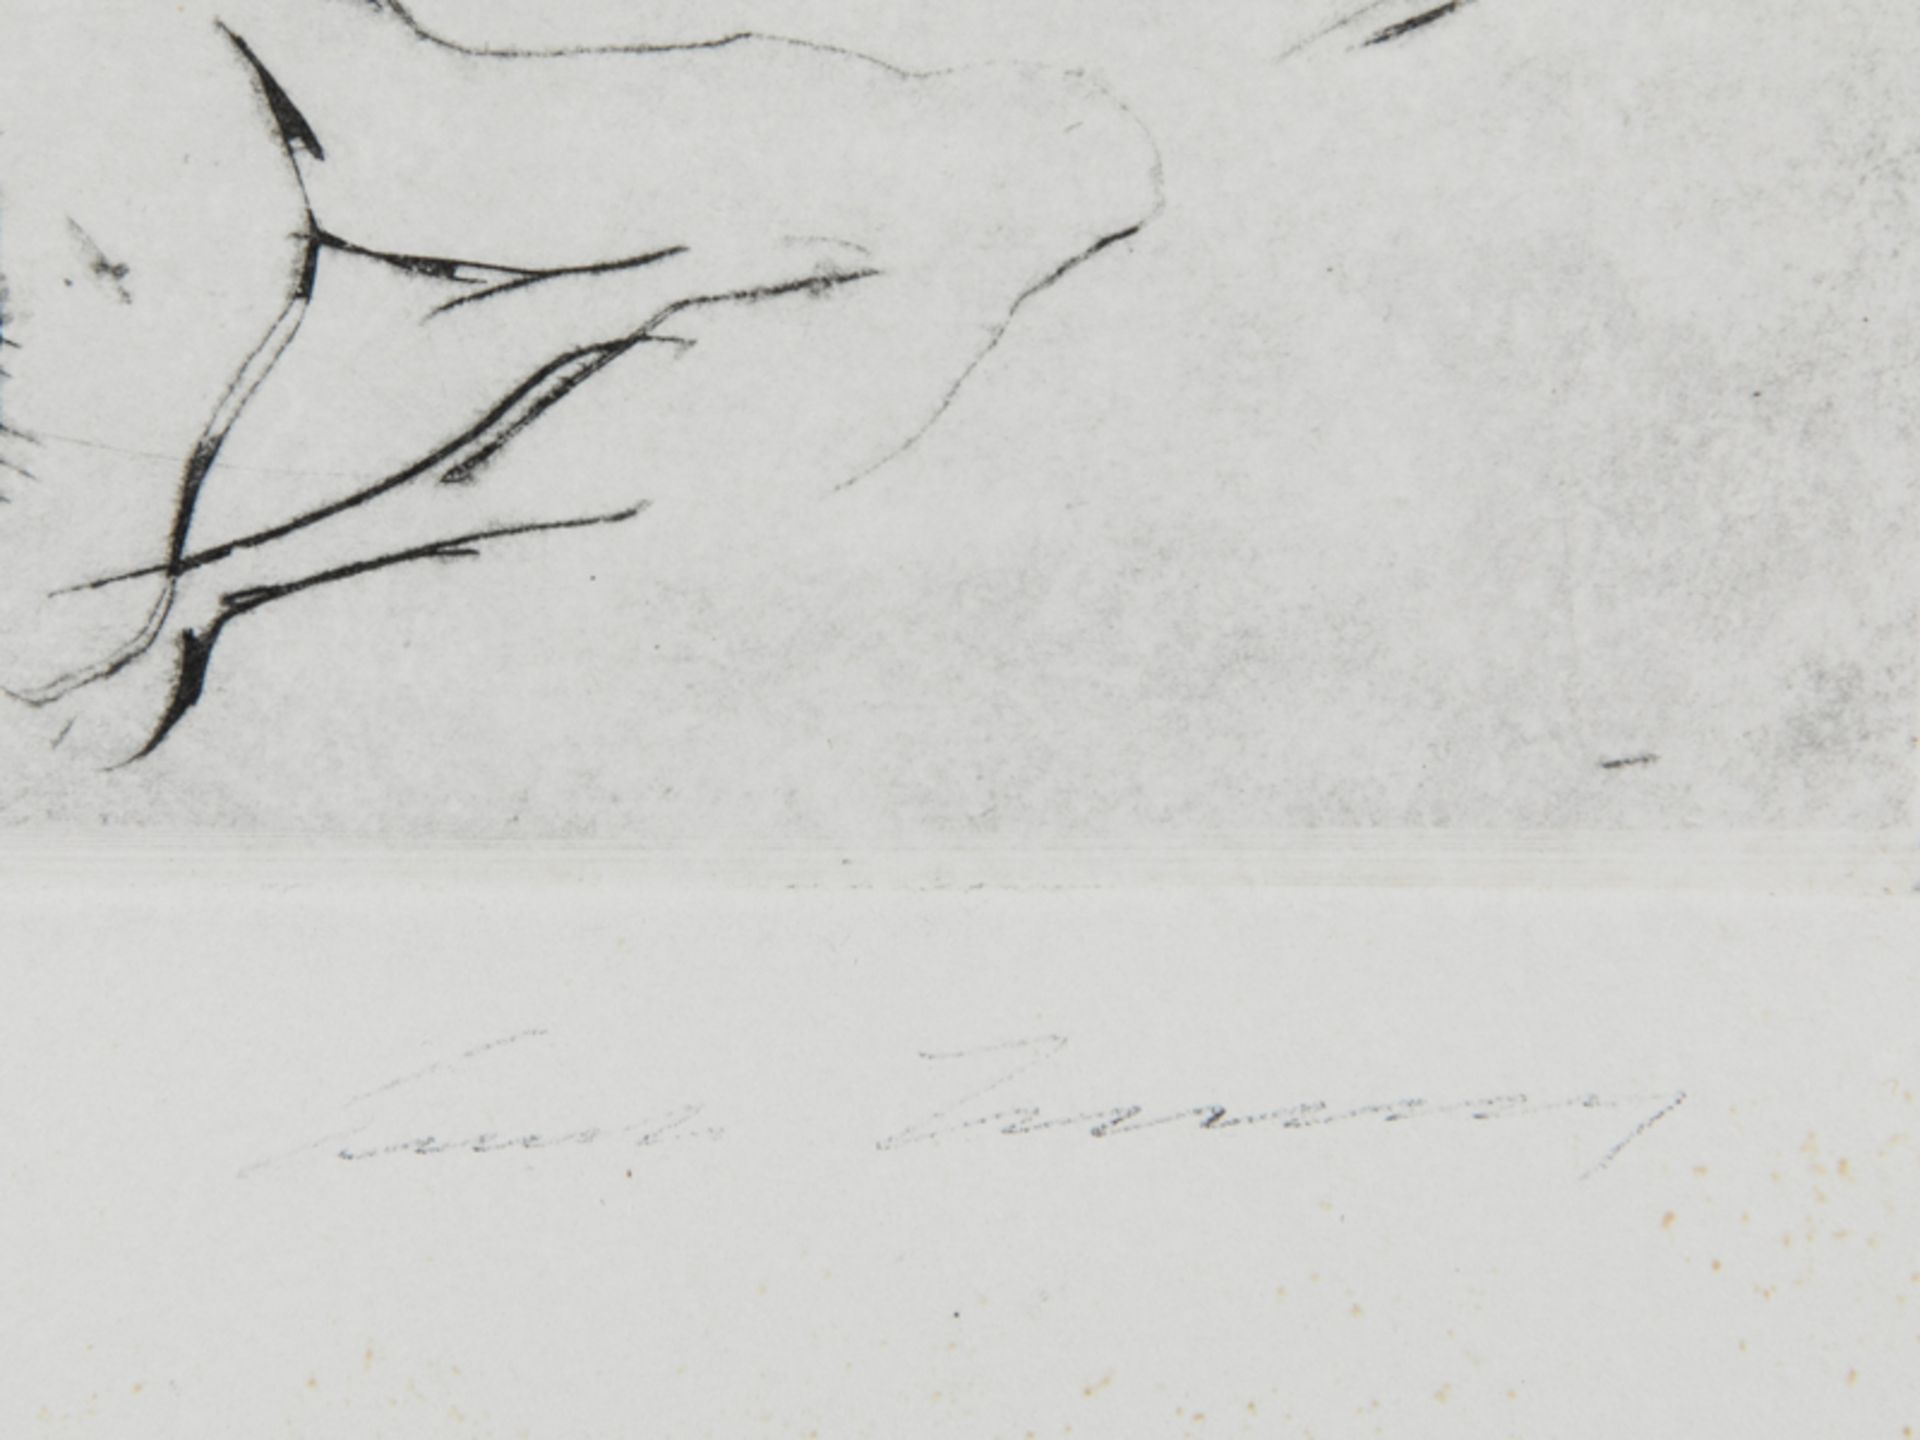 Unbekannter Lithograph, 20. Jahrhundert. "Zwei weibliche Akte", skizzenhaft abstrahierte Darste - Bild 3 aus 5